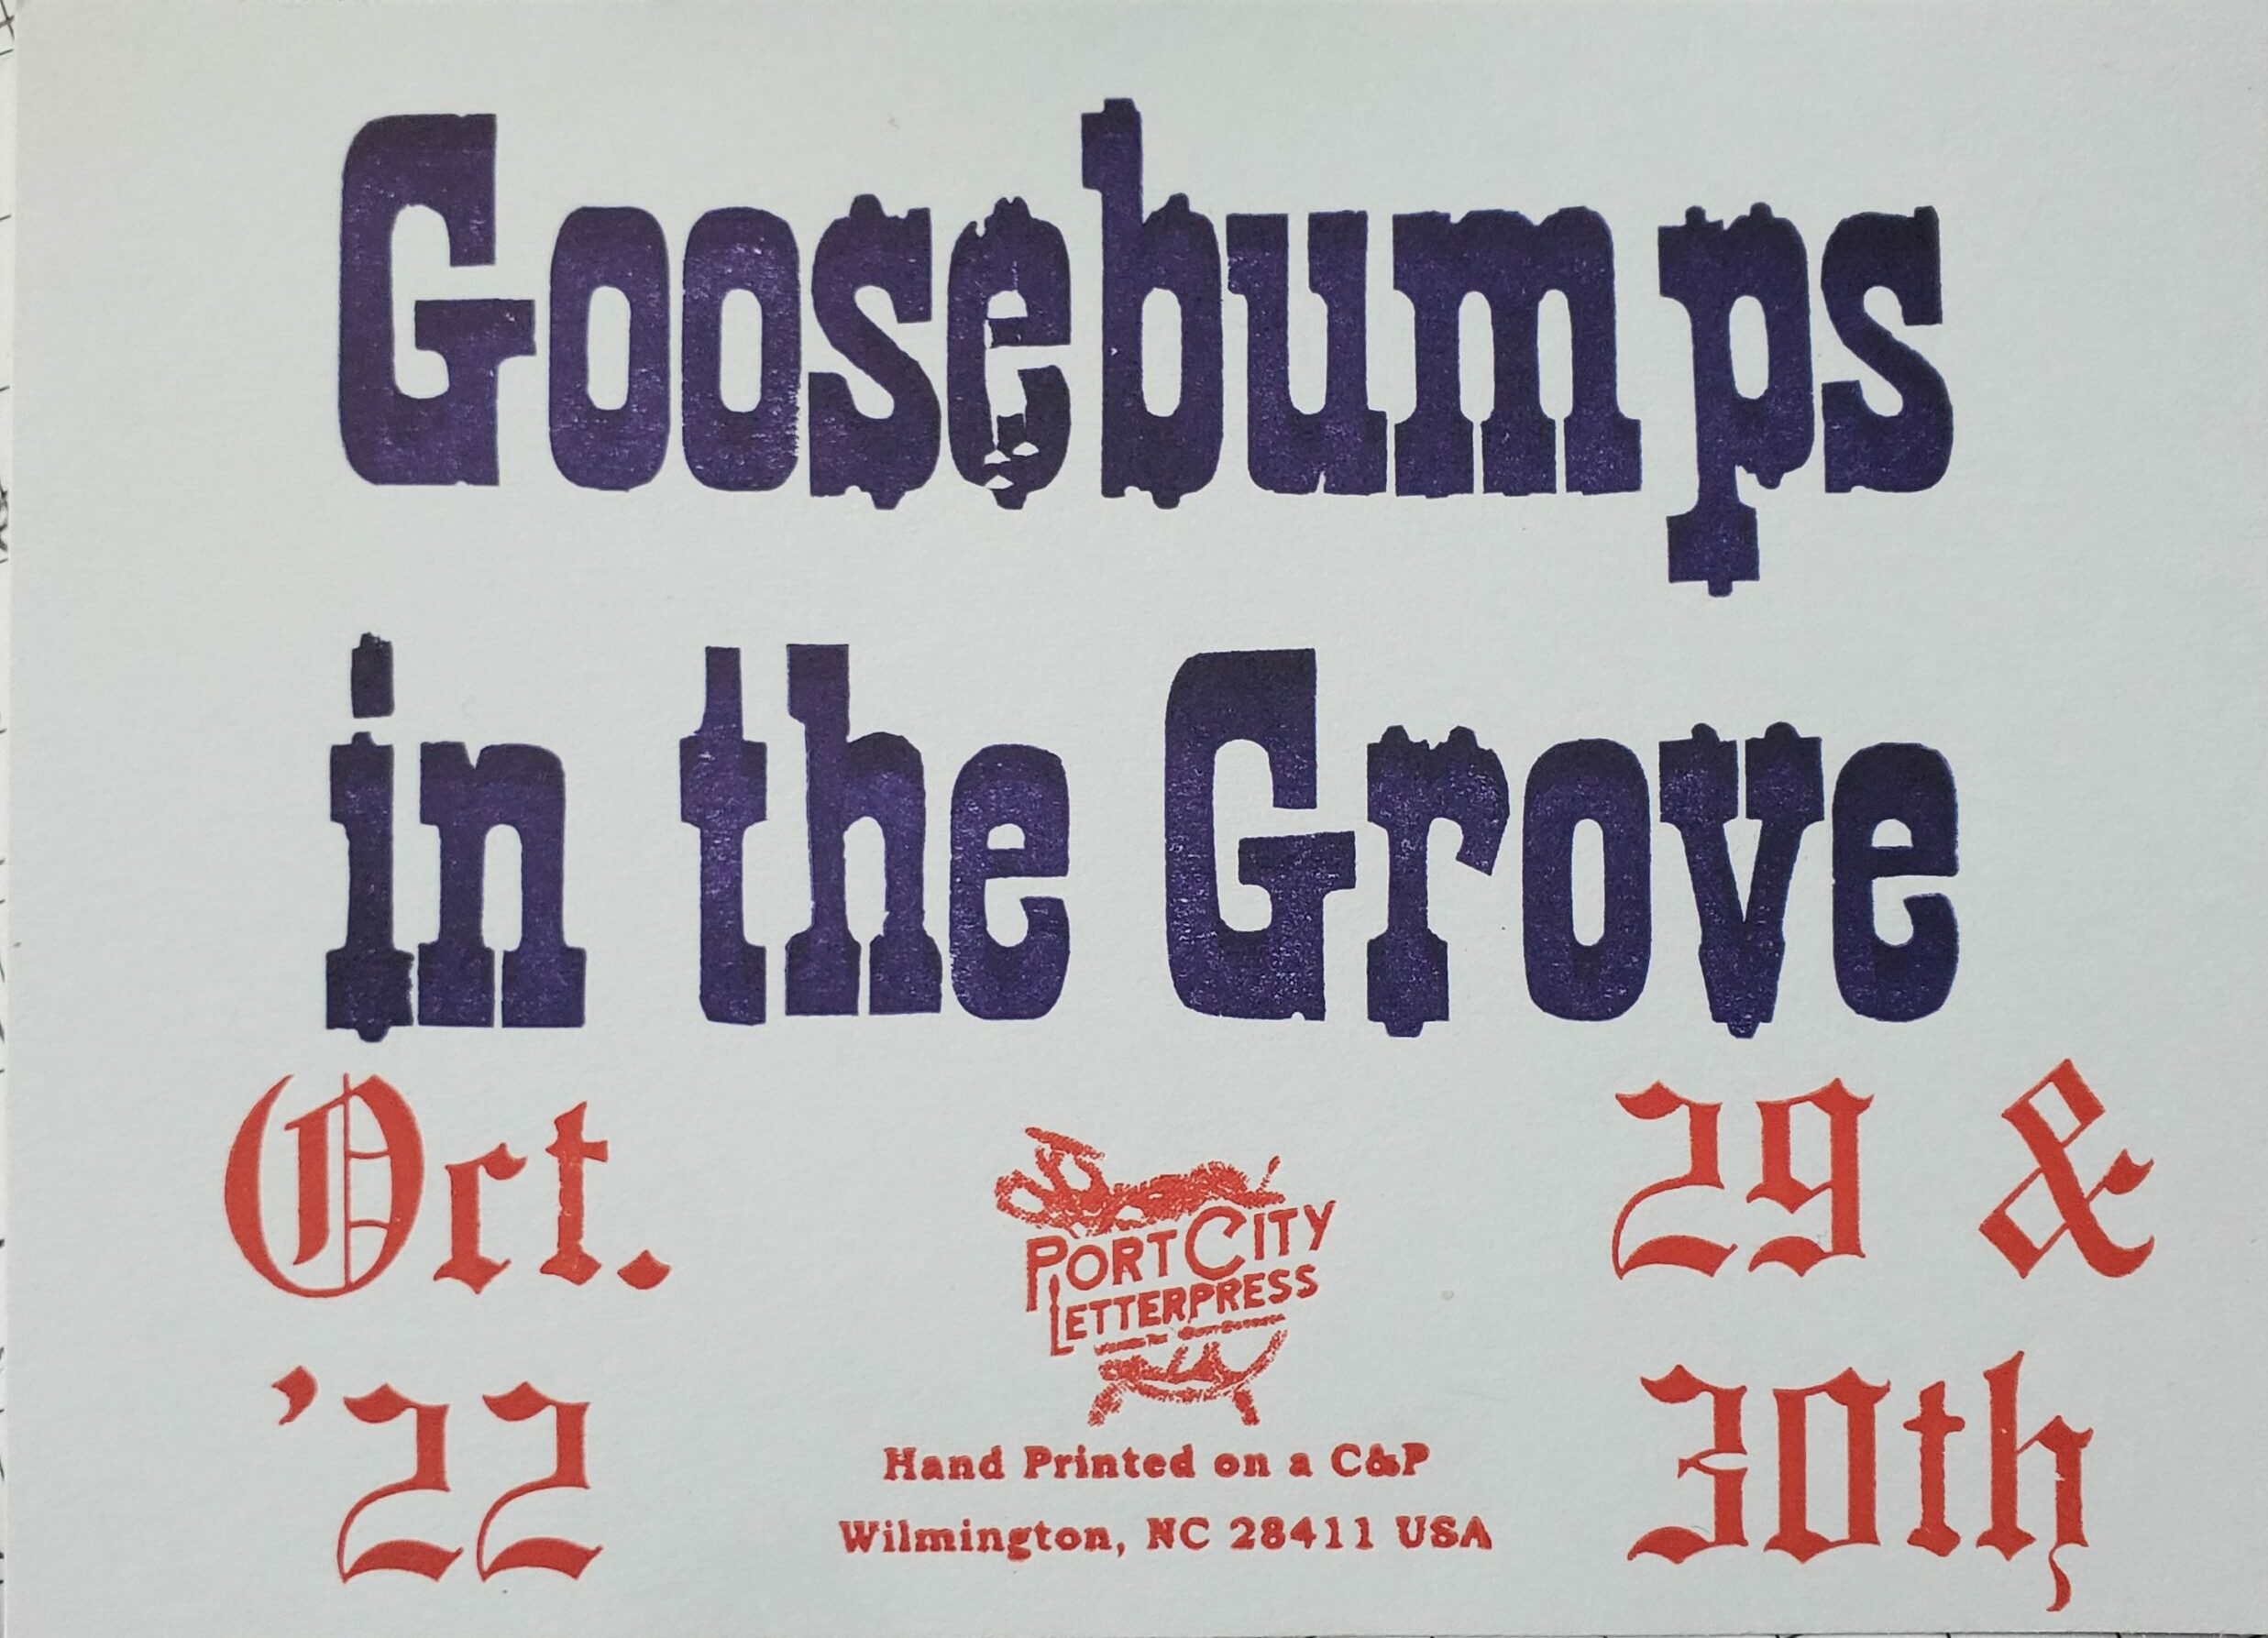 Goosebumps in the Grove